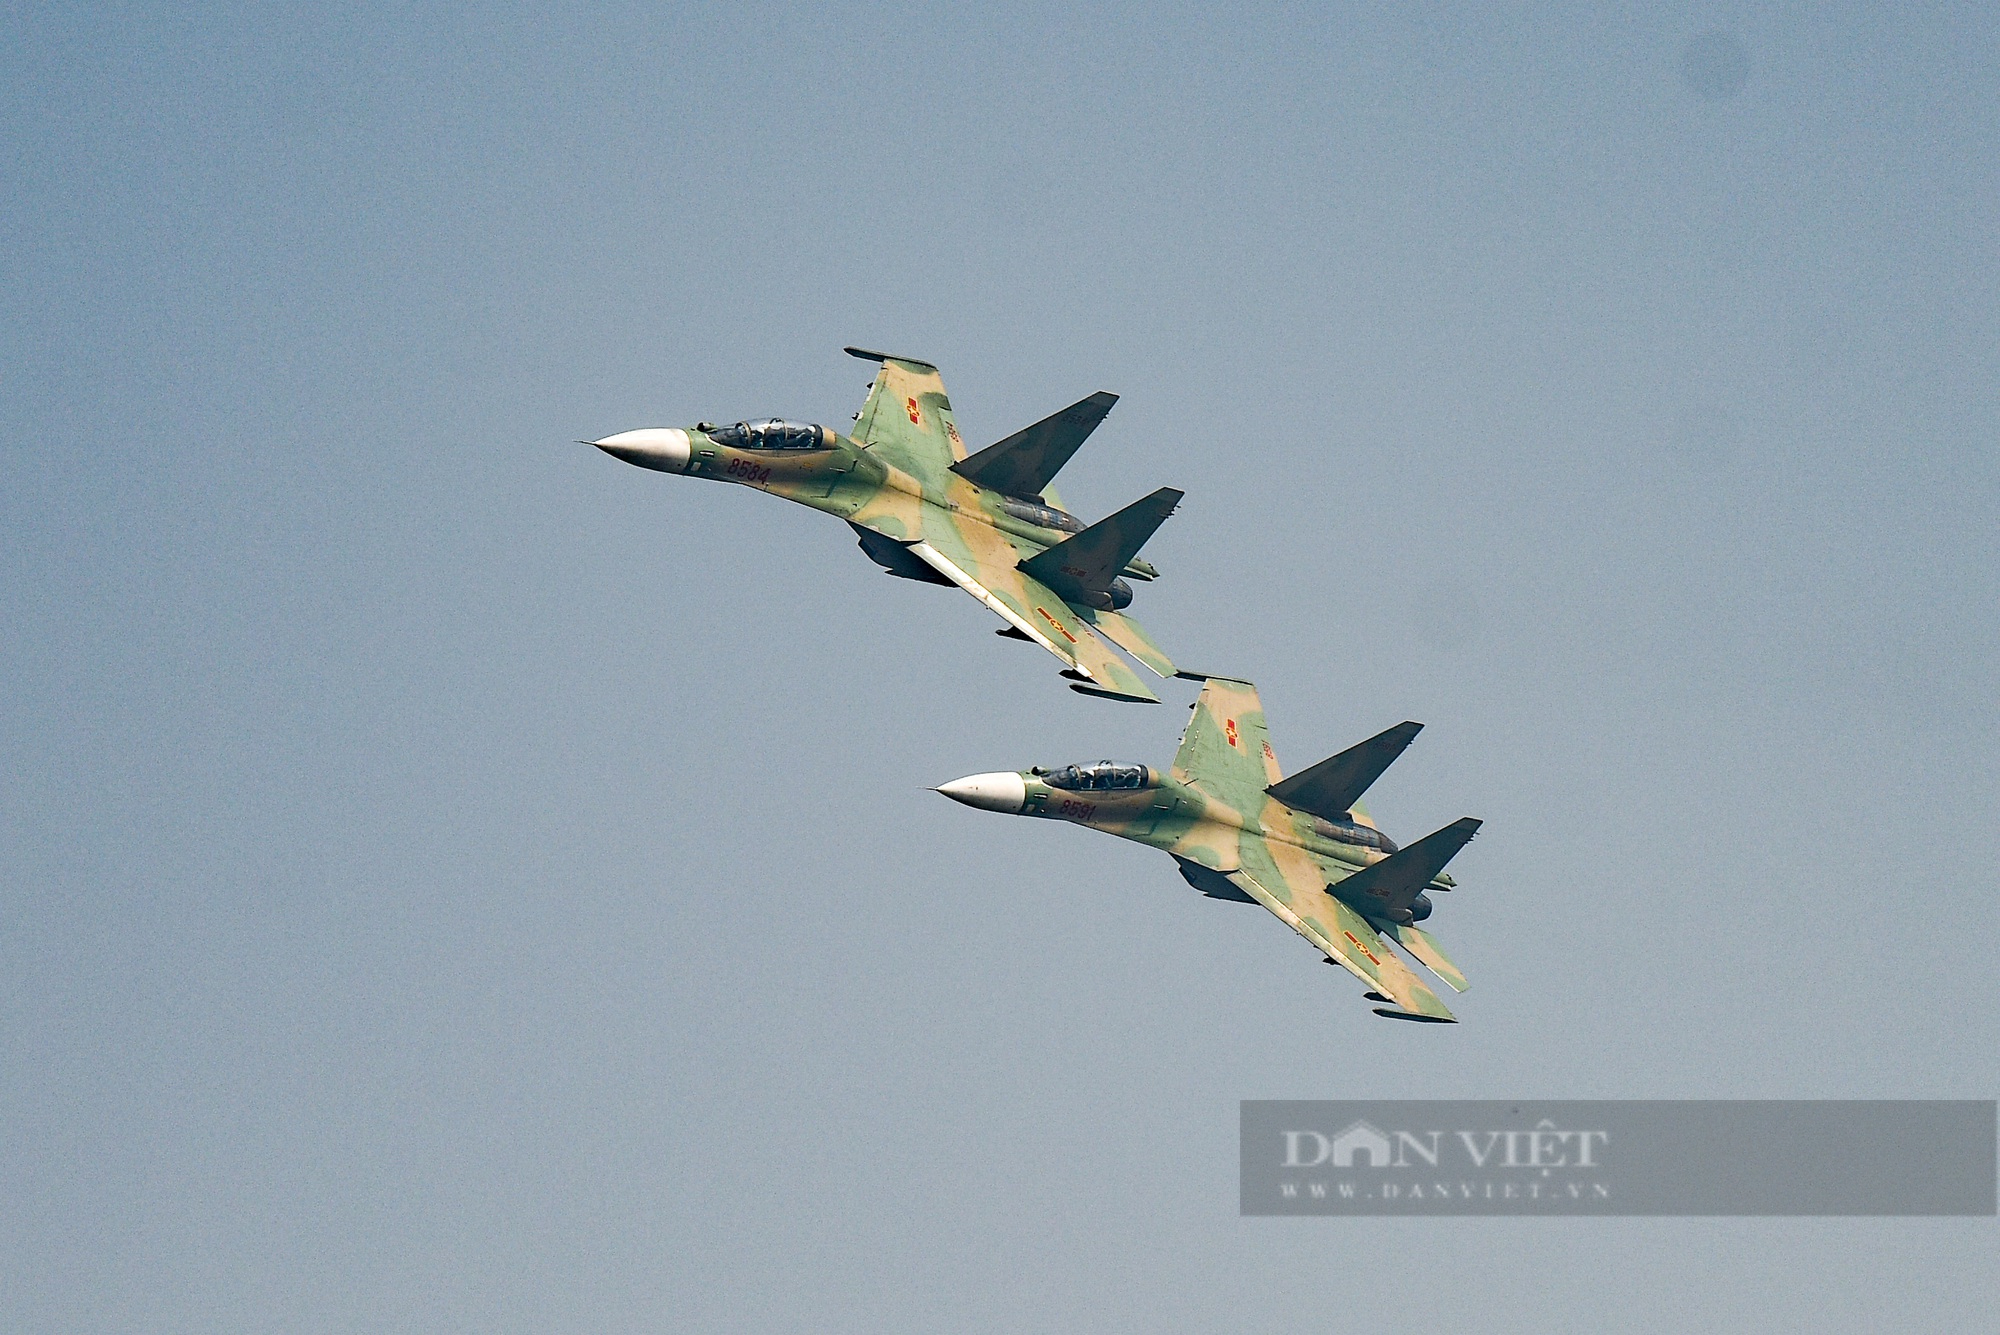 Ấn tượng hình ảnh &quot;Hổ mang chúa&quot; Su-30 bay luợn trên bầu trời Hà Nội - Ảnh 4.